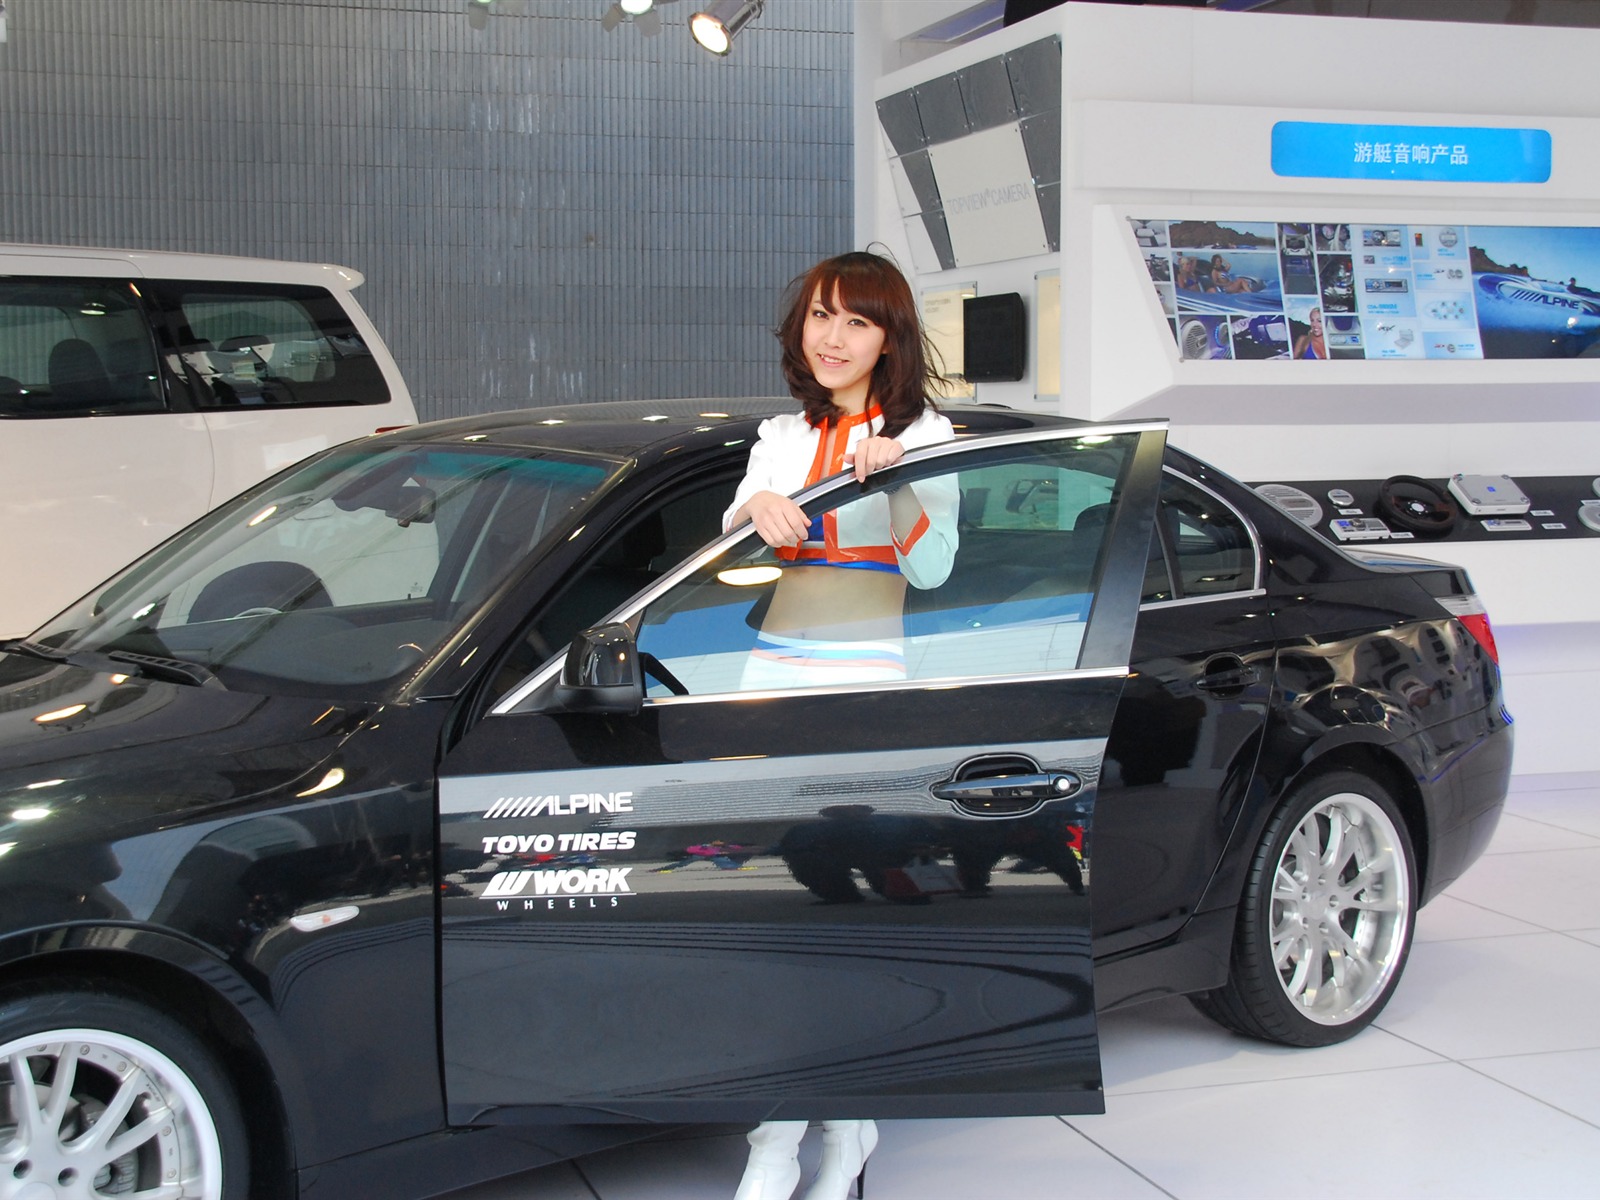 2010北京国际车展(二) (z321x123作品)35 - 1600x1200